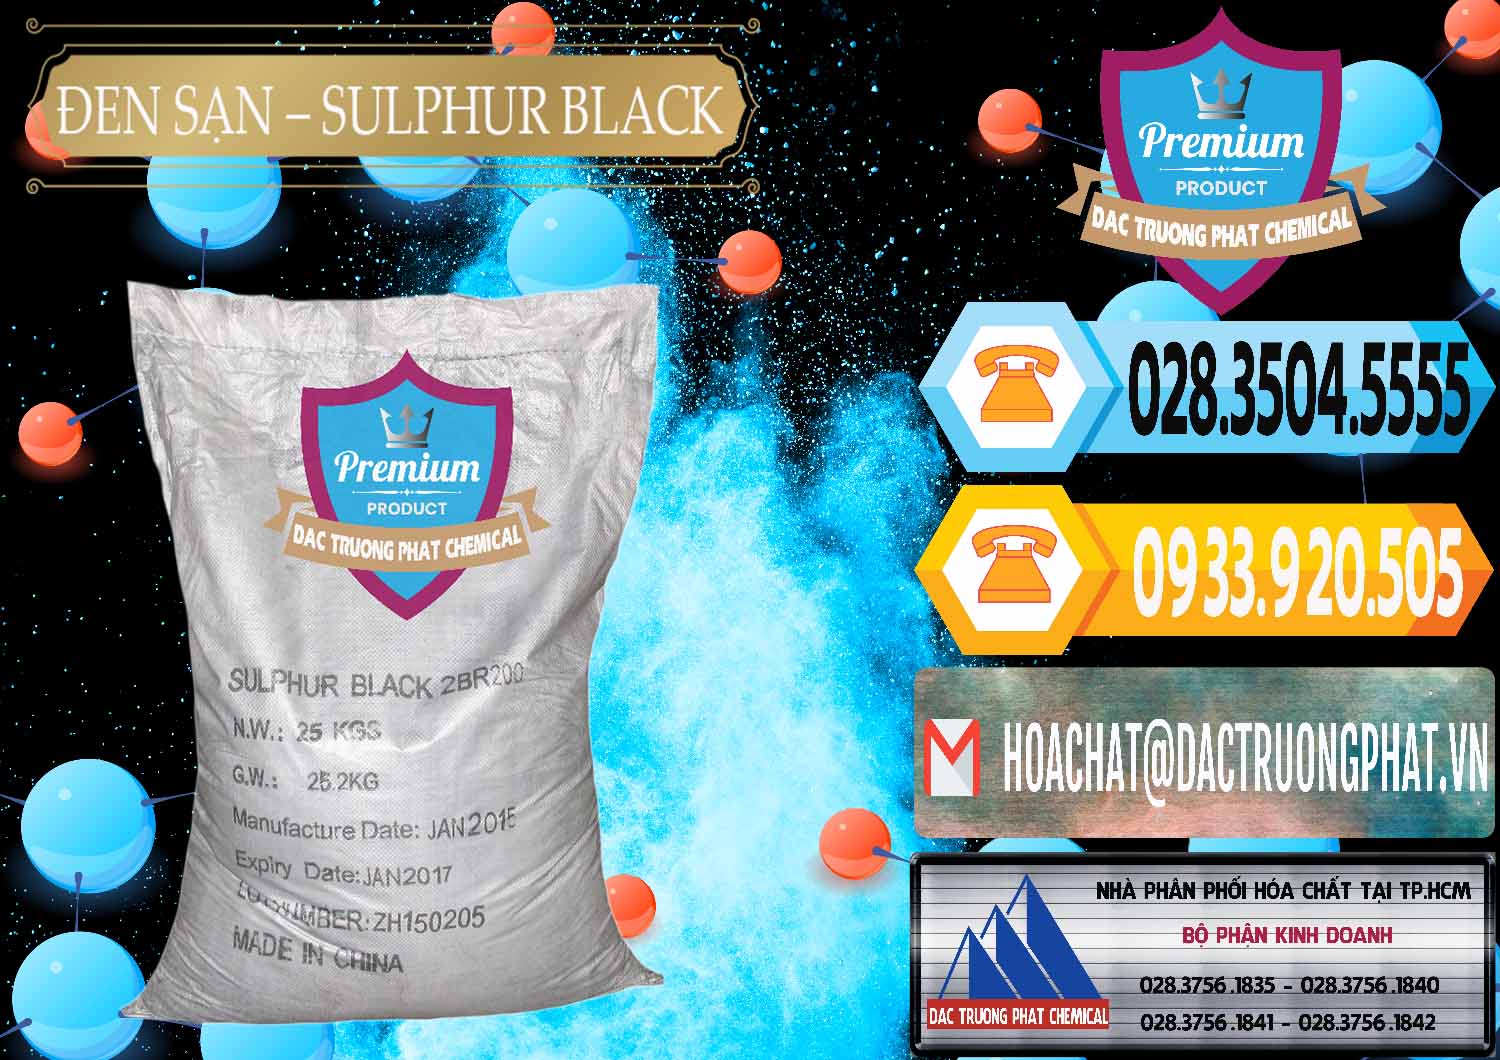 Cty kinh doanh ( bán ) Đen Sạn – Sulphur Black Trung Quốc China - 0062 - Nơi cung cấp & phân phối hóa chất tại TP.HCM - hoachattayrua.net